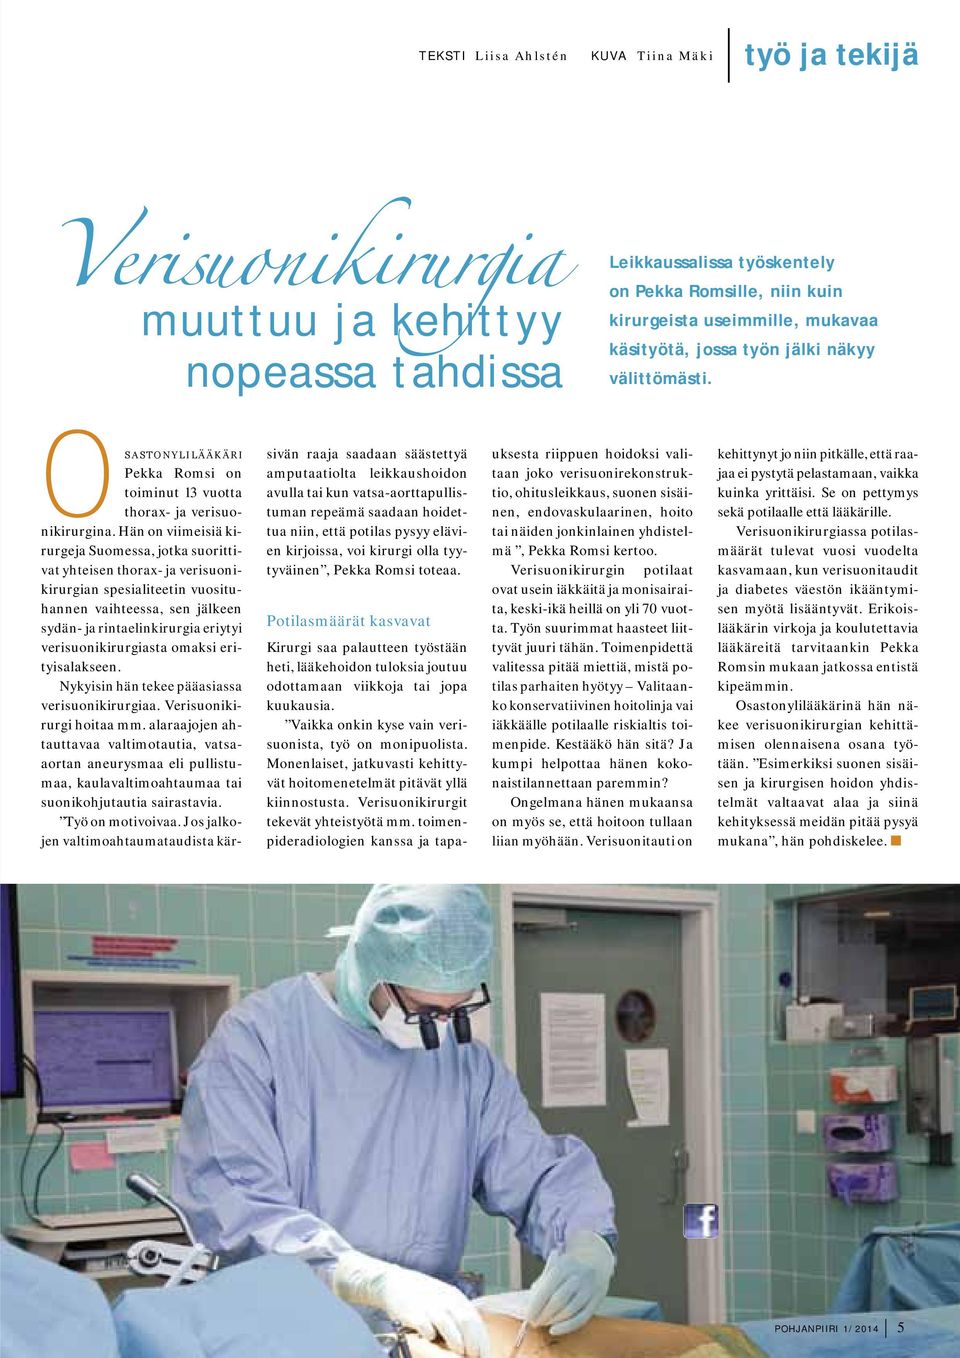 Hän on viimeisiä kirurgeja Suomessa, jotka suorittivat yhteisen thorax- ja verisuonikirurgian spesialiteetin vuosituhannen vaihteessa, sen jälkeen sydän- ja rintaelinkirurgia eriytyi